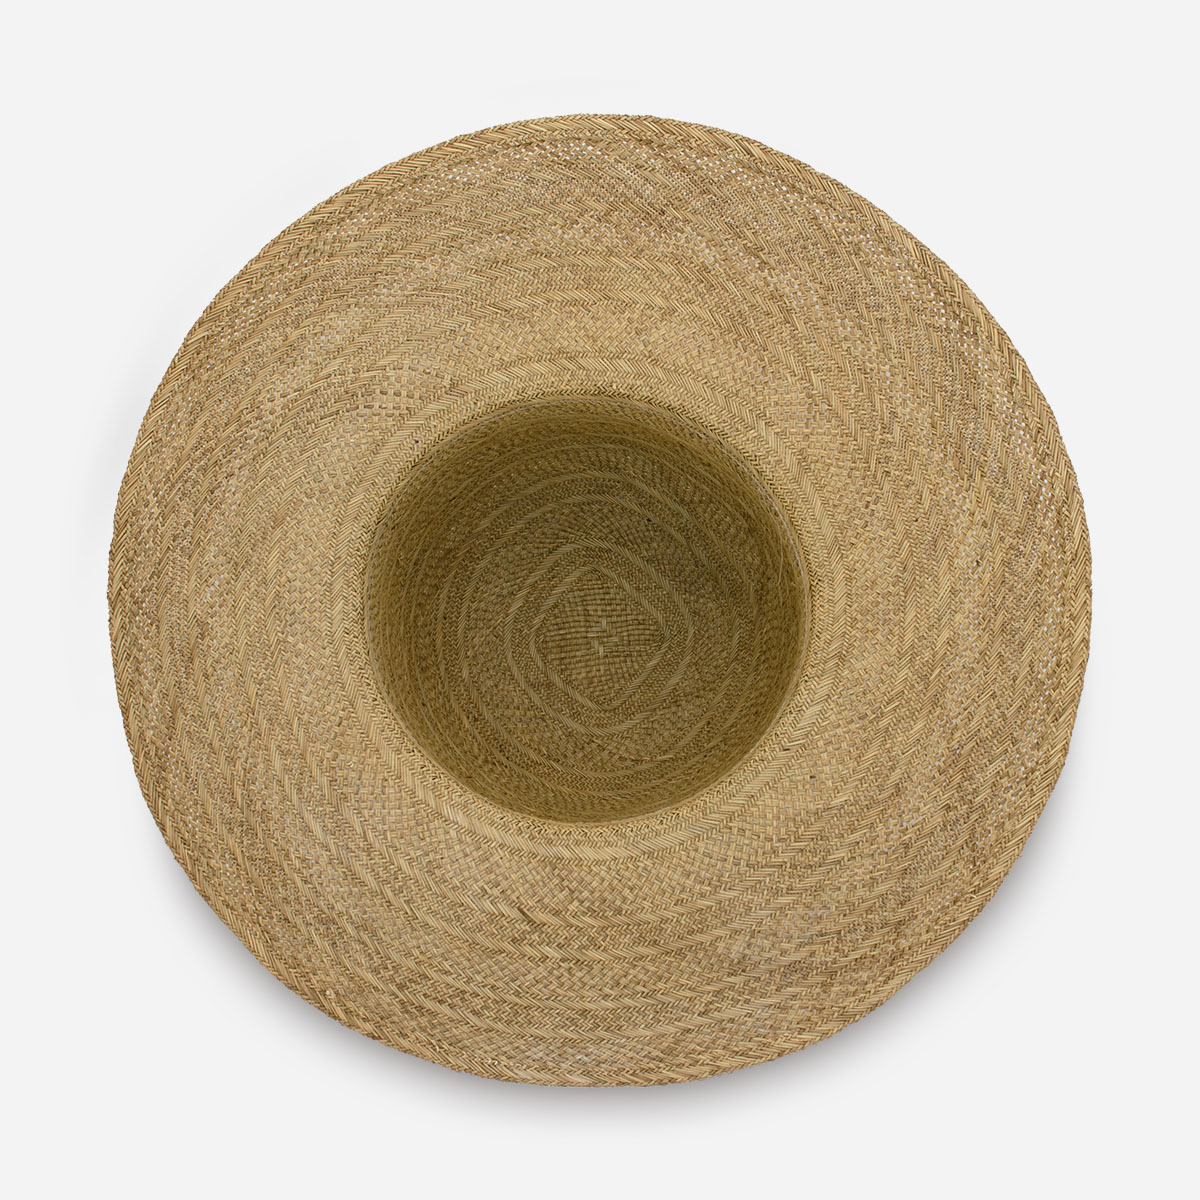 wide brim straw summer hat